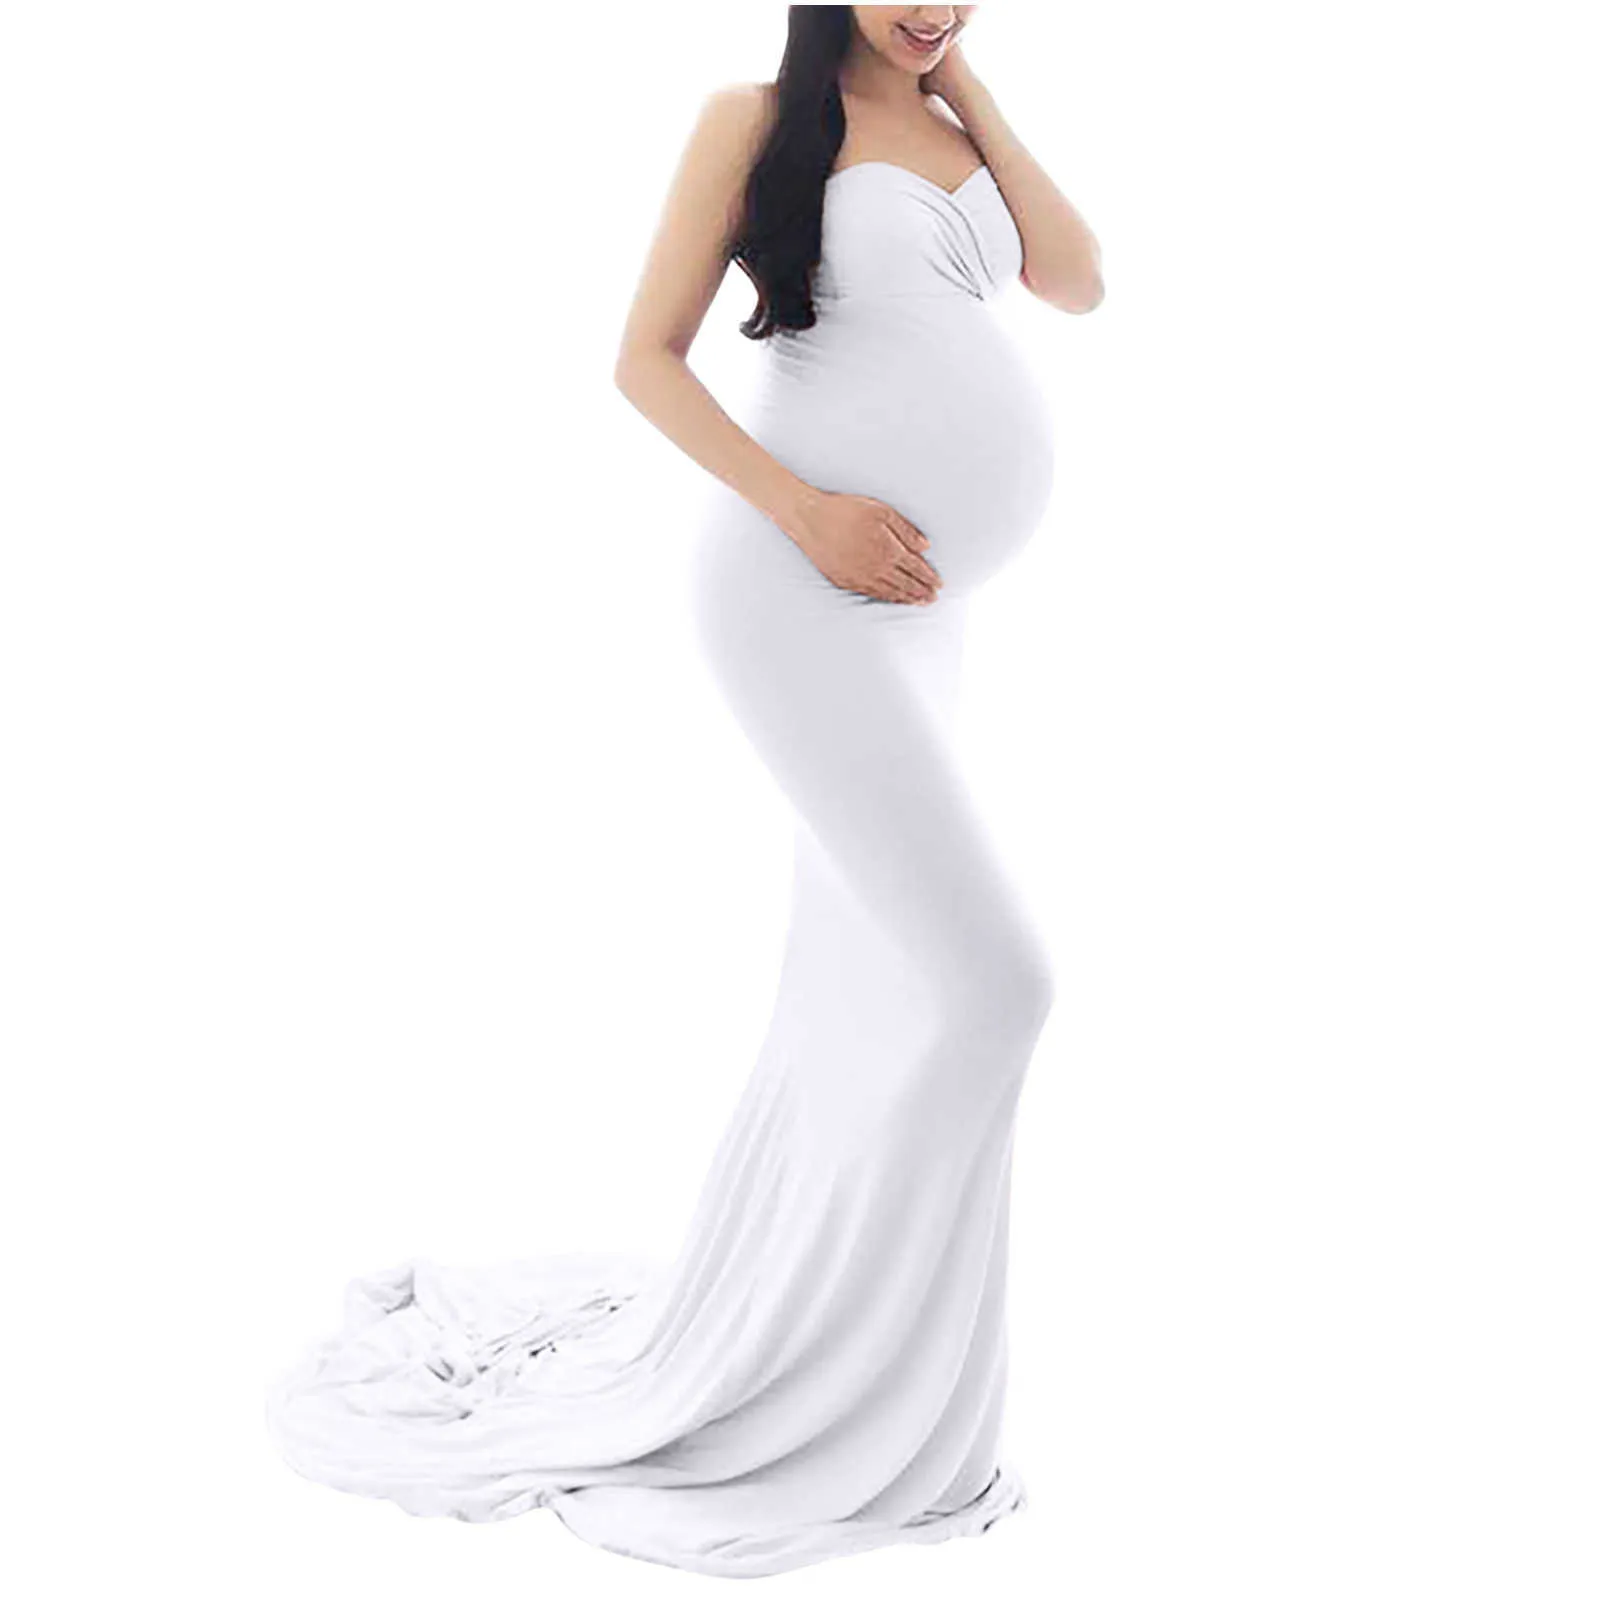 Seksowne sukienki ciążowe na fotografii shoot shiffon sukienka ciążowa fotografia propaga maksiczna suknia dla kobiet w ciąży odzież x0902